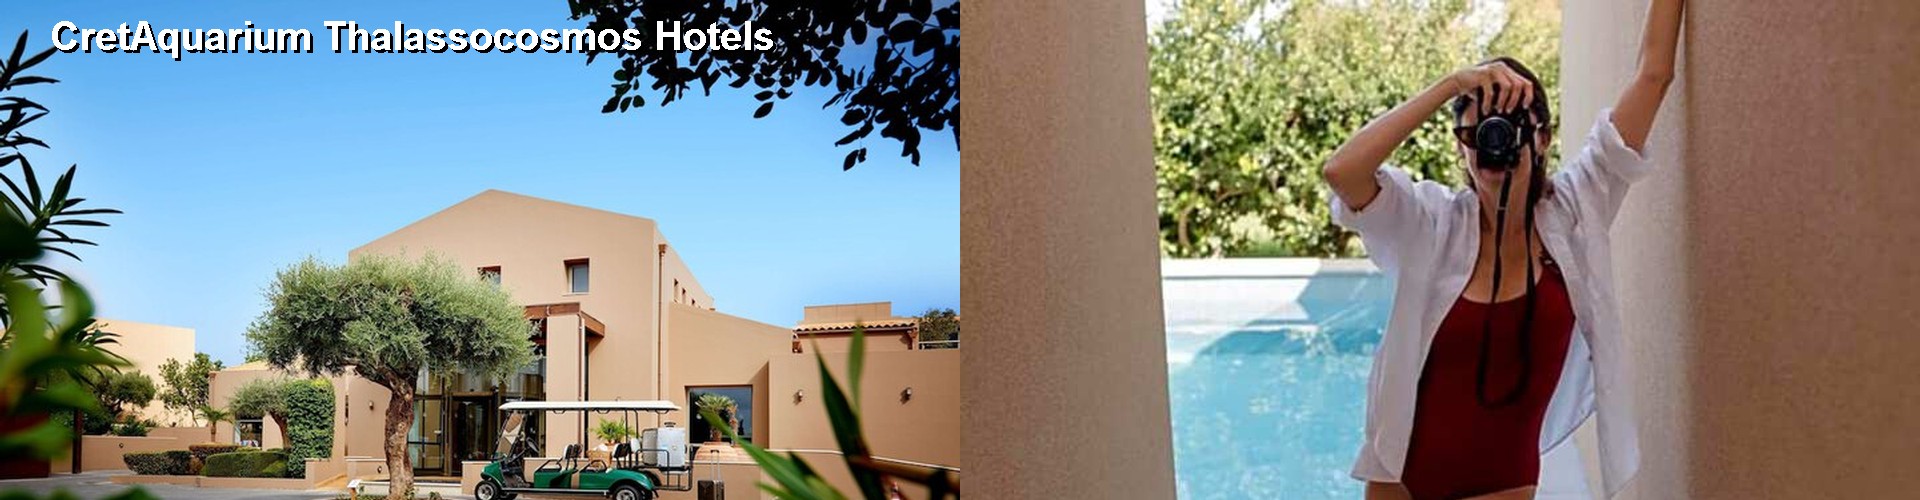 5 Best Hotels near CretAquarium Thalassocosmos